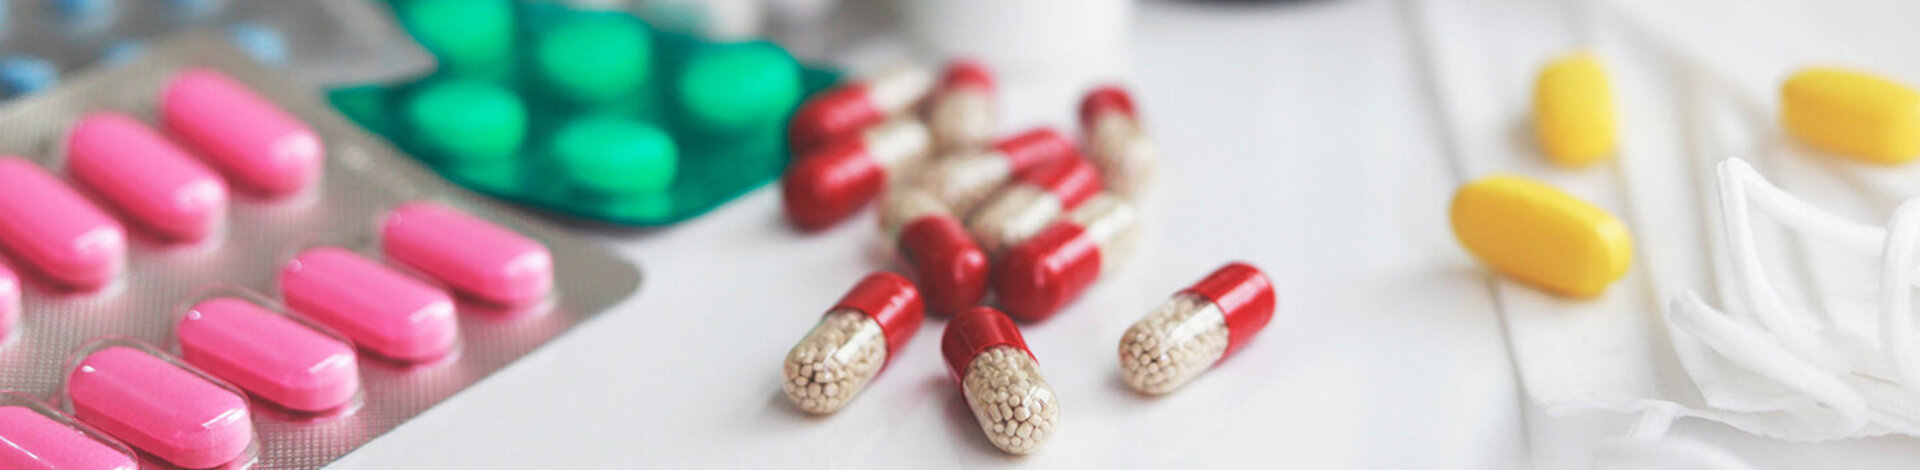 Haufen von medizinischen Pillen in weiß, rot und anderen Farben.